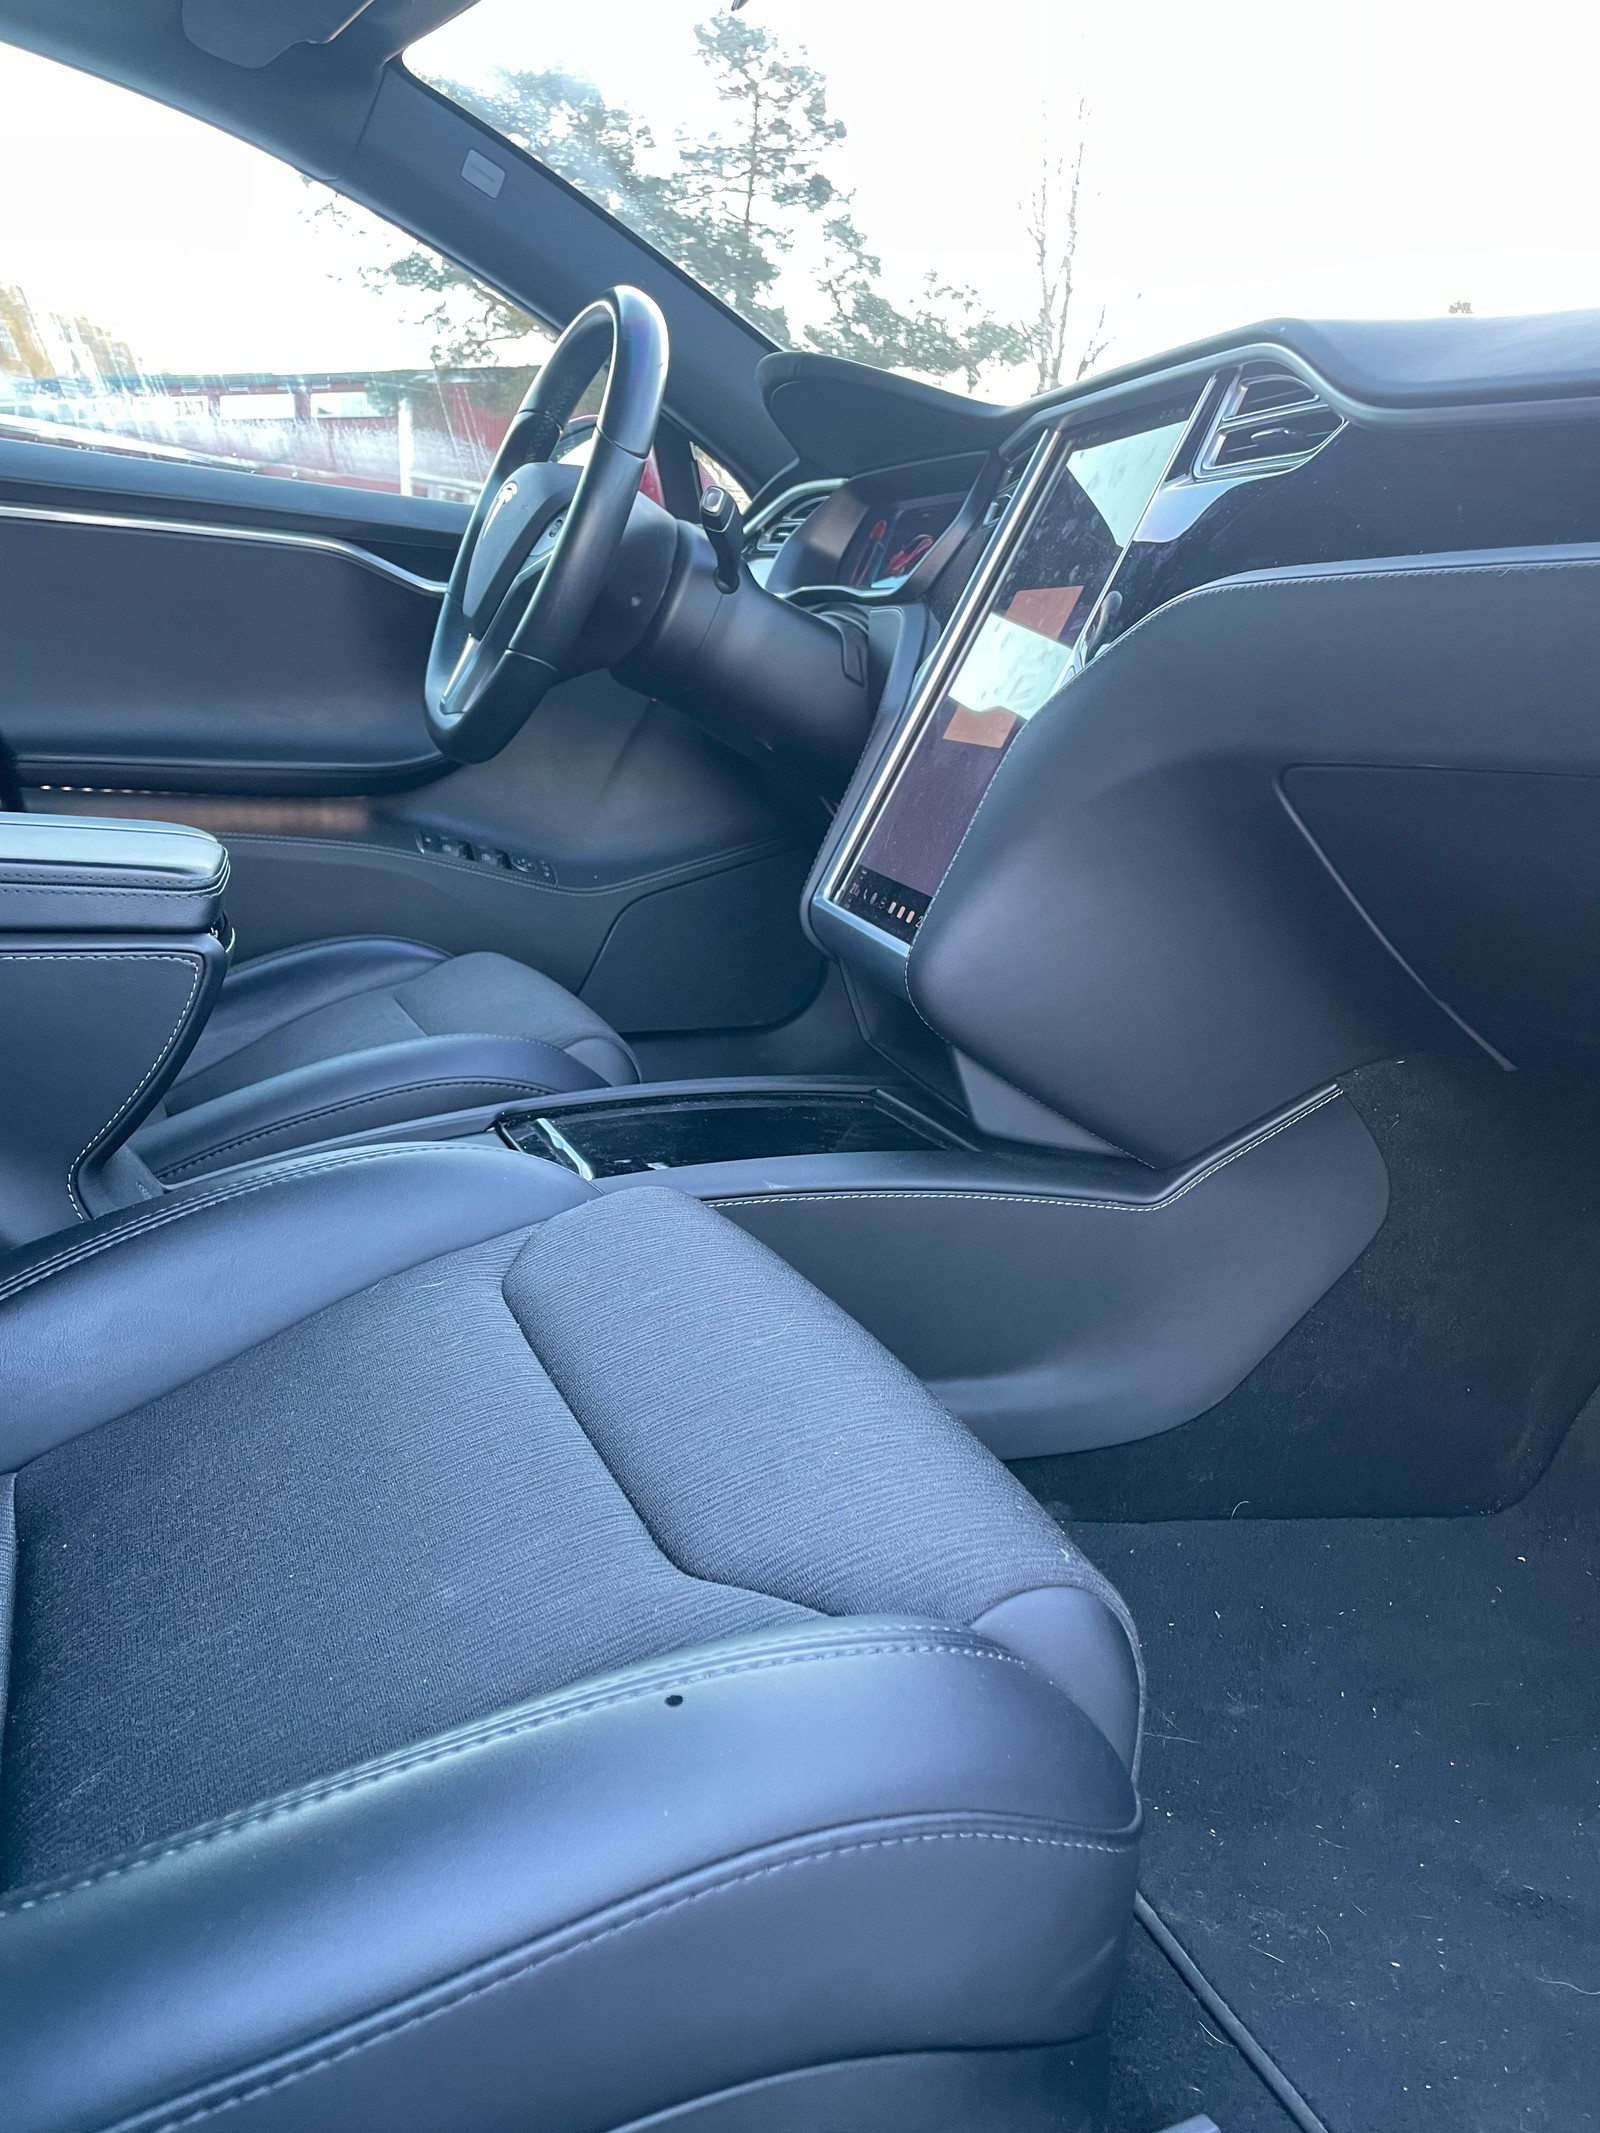 Bilde 16 av Tesla Model S